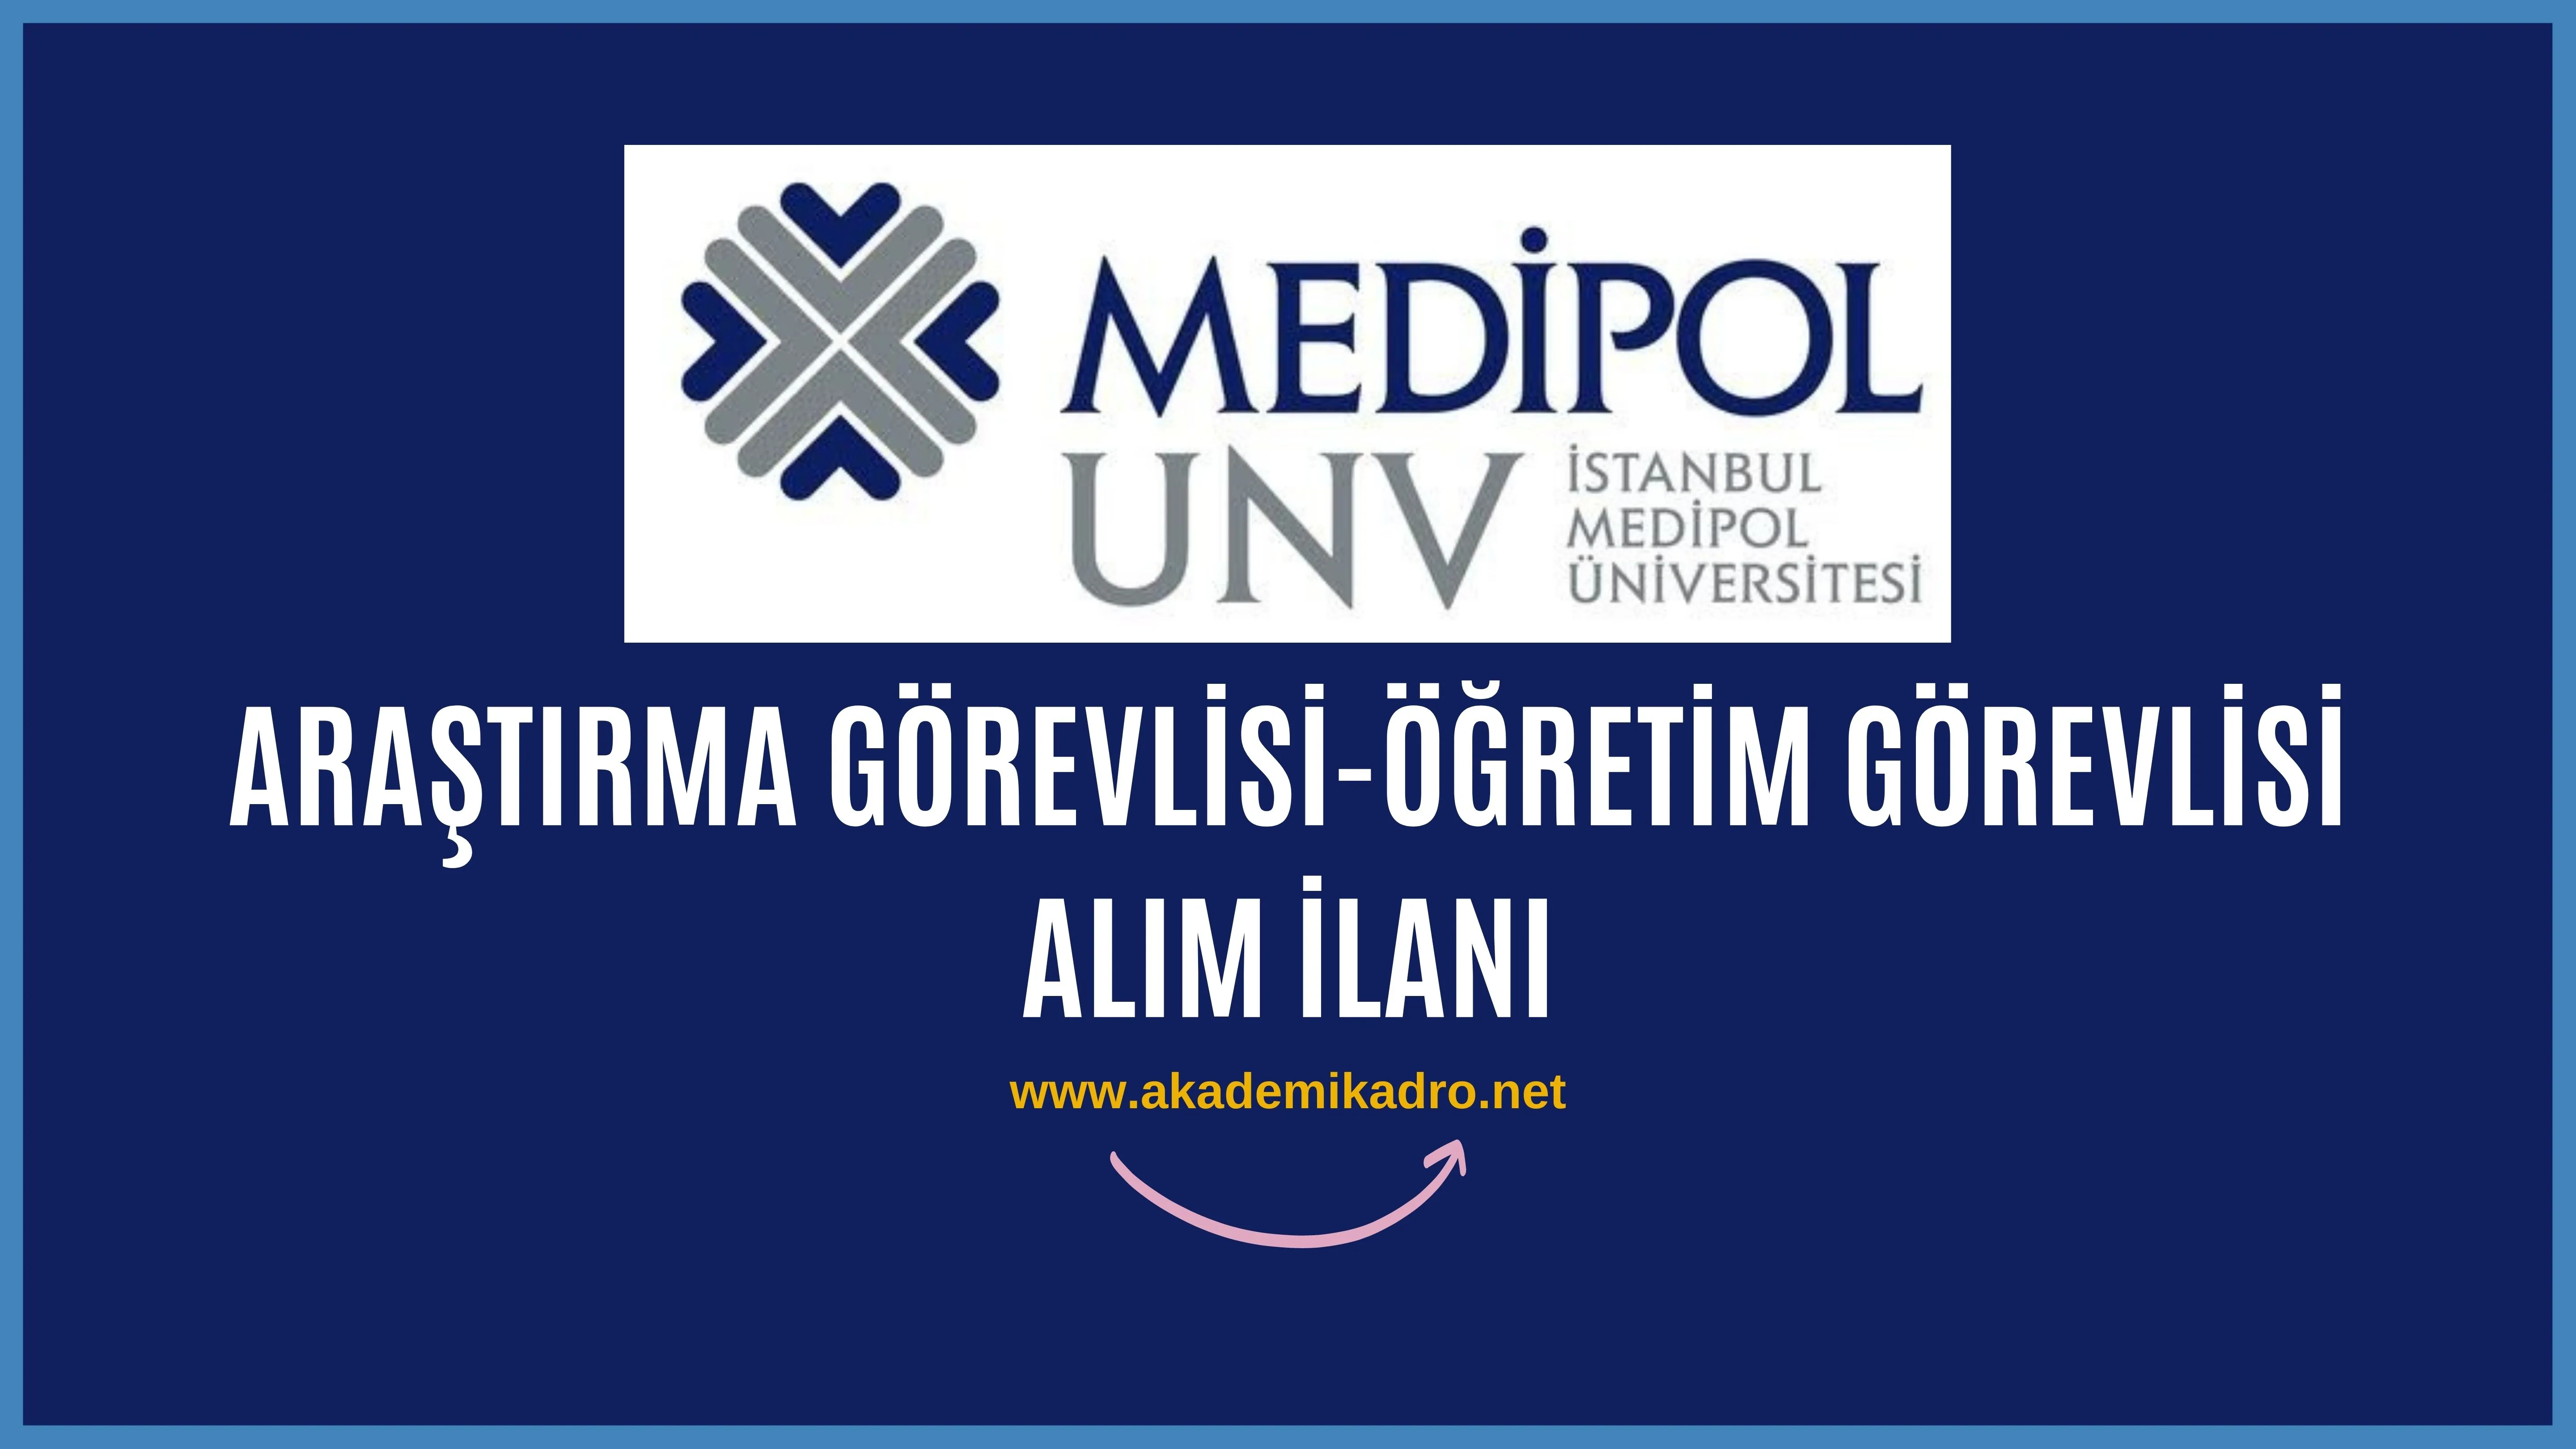 İstanbul Medipol Üniversitesi 15 Araştırma Görevlisi ve 6 Öğretim Görevlisi Alacak, Son Başvuru Tarihi 28.10.2022.